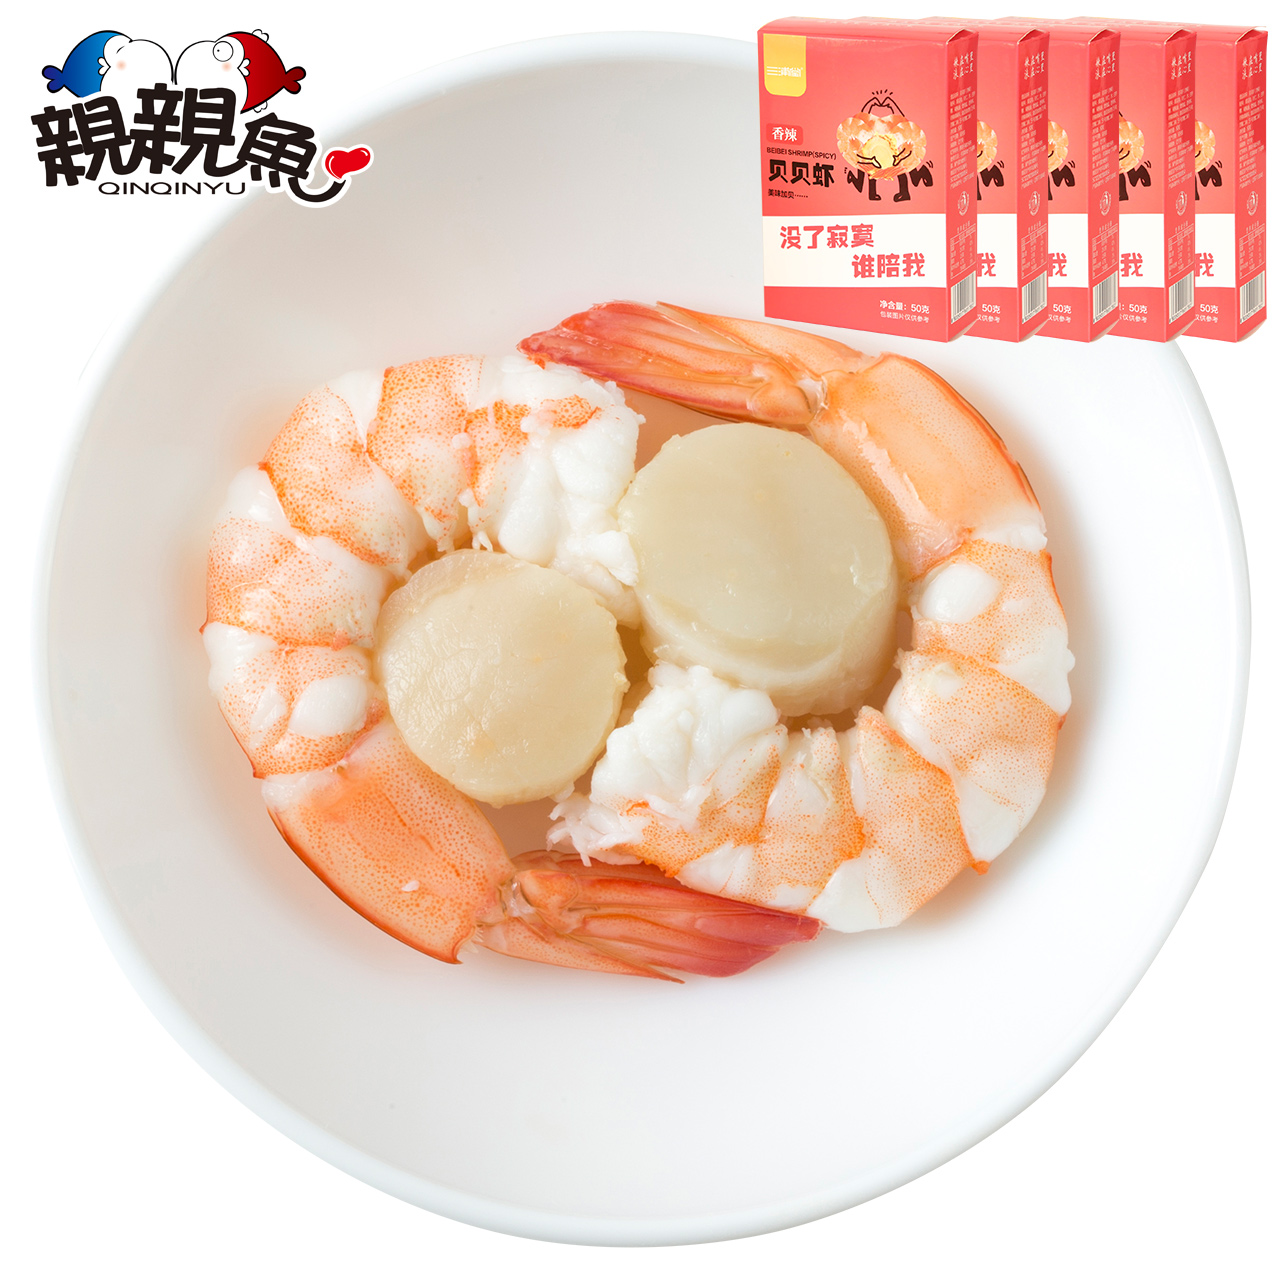 大连贝贝虾50g*5盒 扇贝即食虾仁 零食对对虾干 香辣虾海鲜小食品